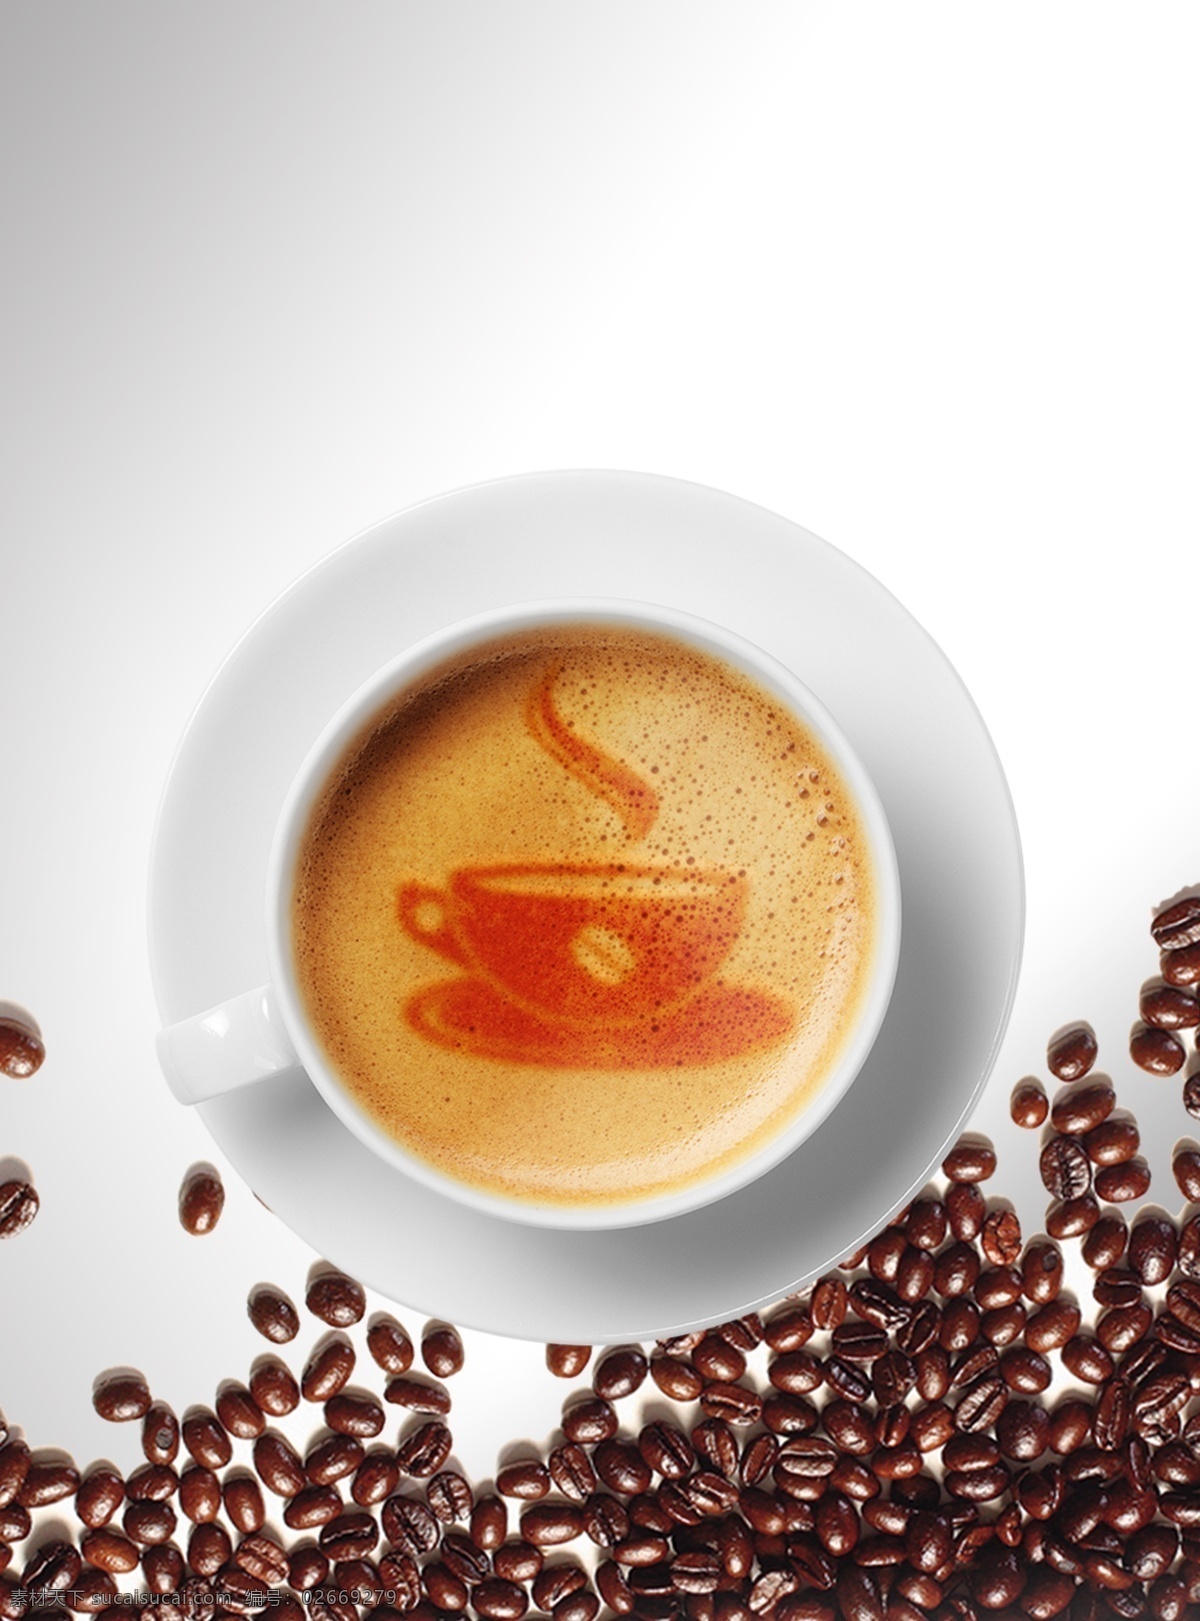 咖啡拉花样机 咖啡 咖啡海报 咖啡样机 咖啡拉花 咖啡豆